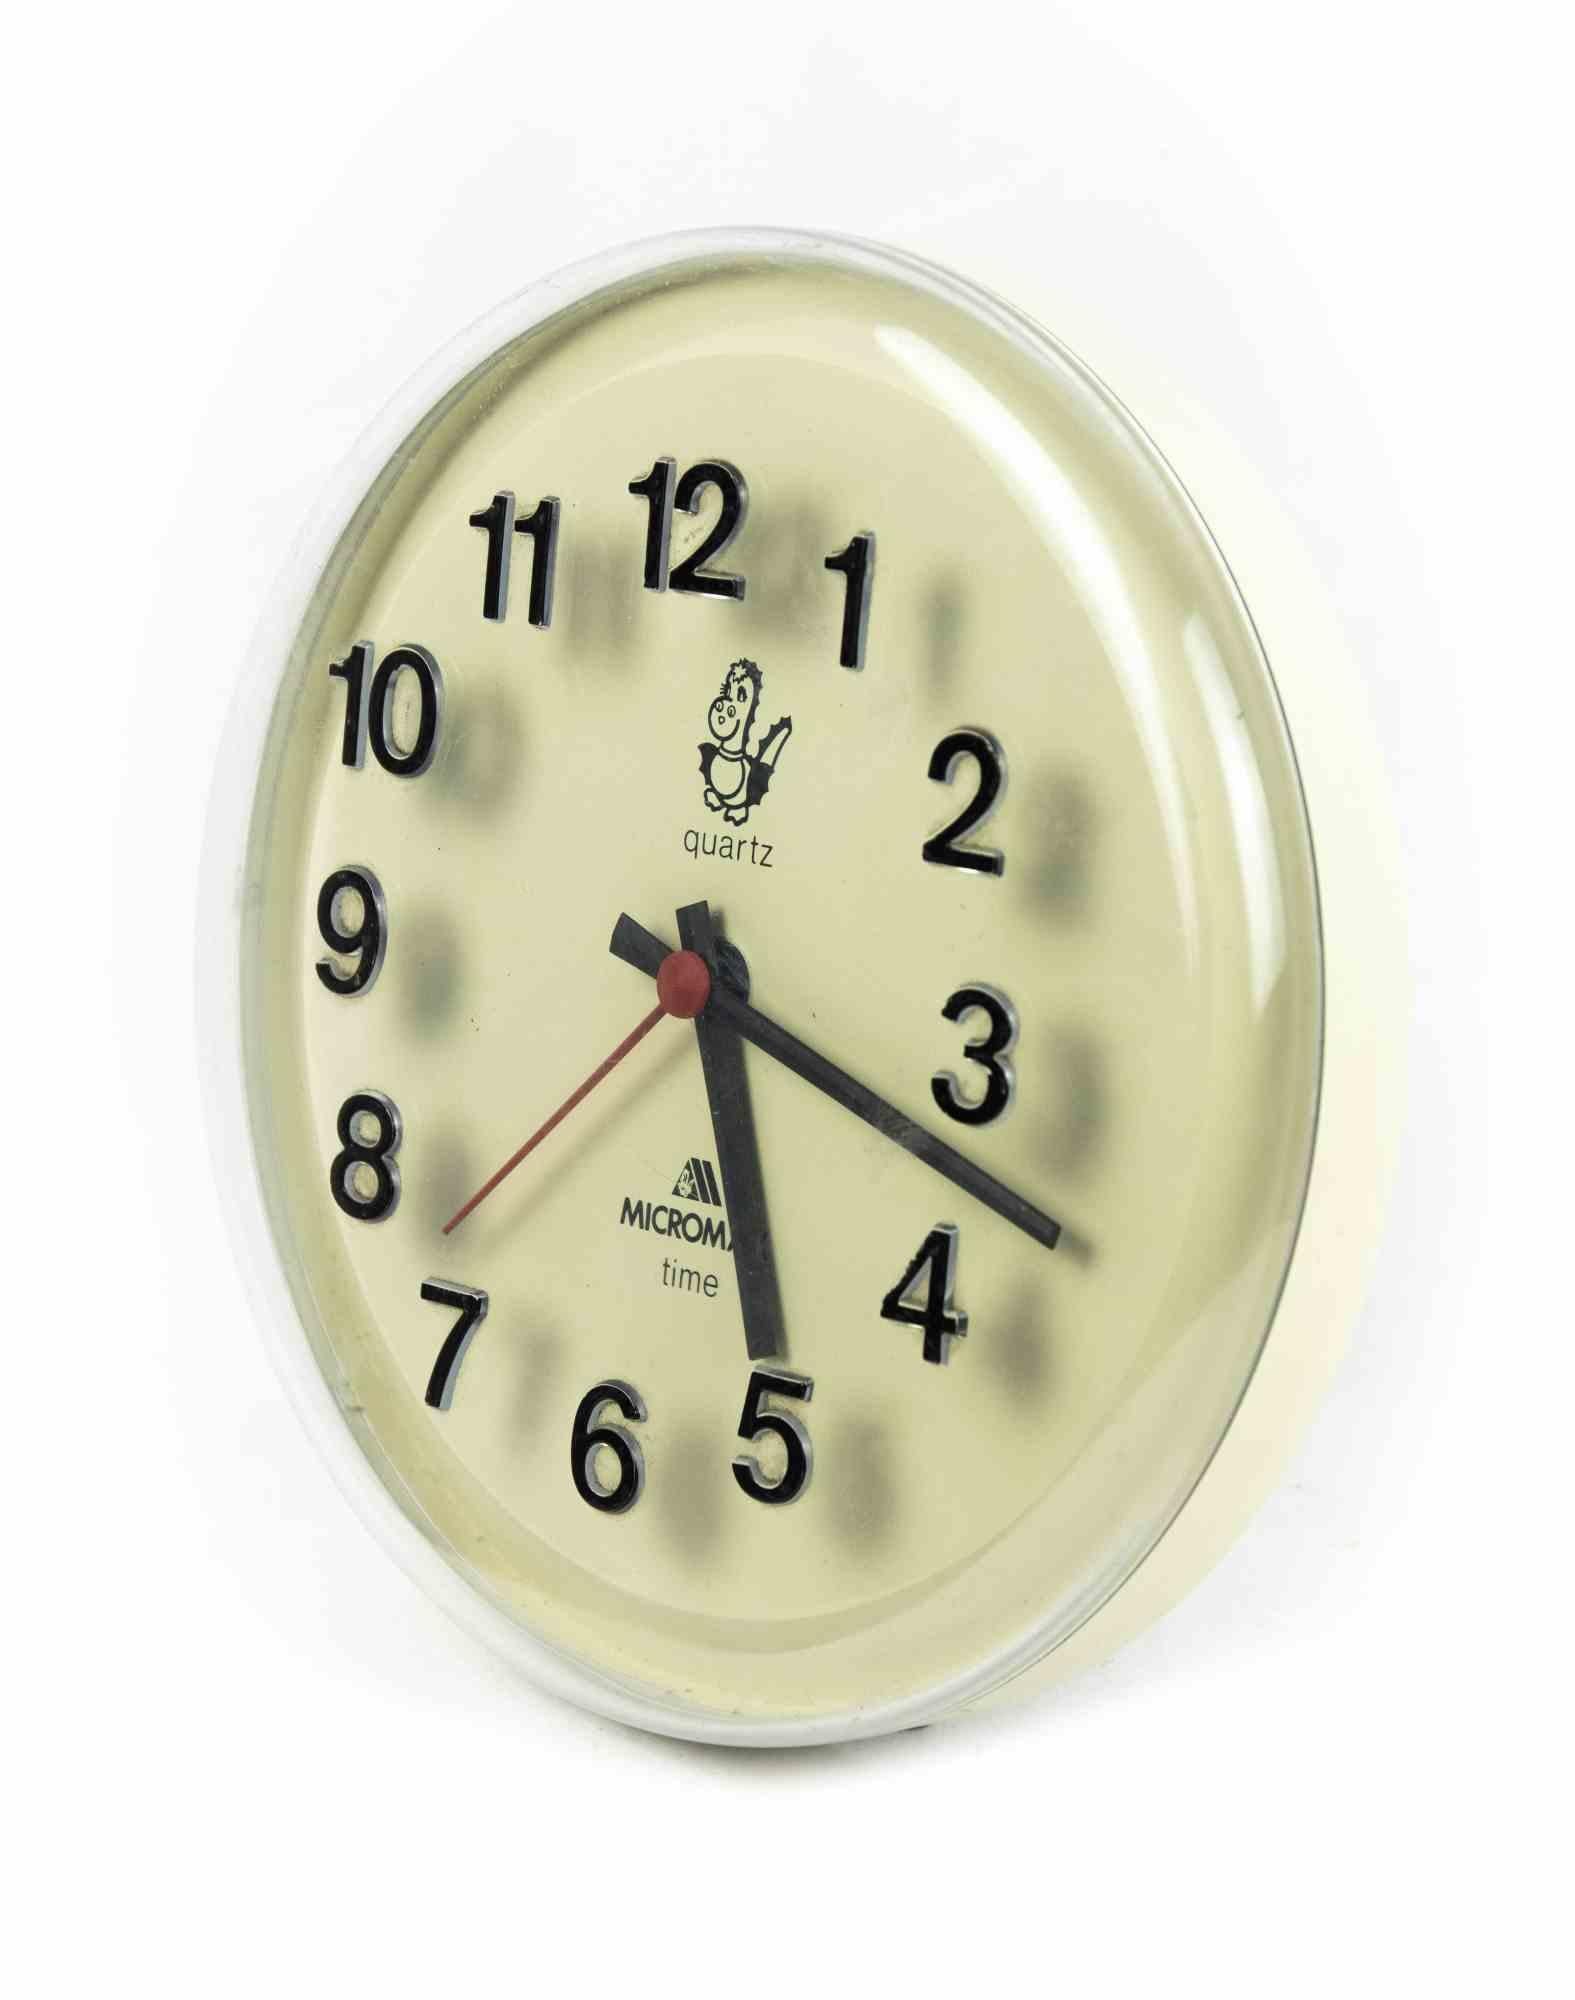 Microma Quartz Vintage Clock ist ein dekoratives Objekt, das in den 1980er Jahren von Microma Quartz 

Eine Vintage-Uhr weiß gefärbt.

Das perfekte Geschenk für einen Sprung in die Vergangenheit.

Aufgrund der Zeit nicht in perfektem Zustand.